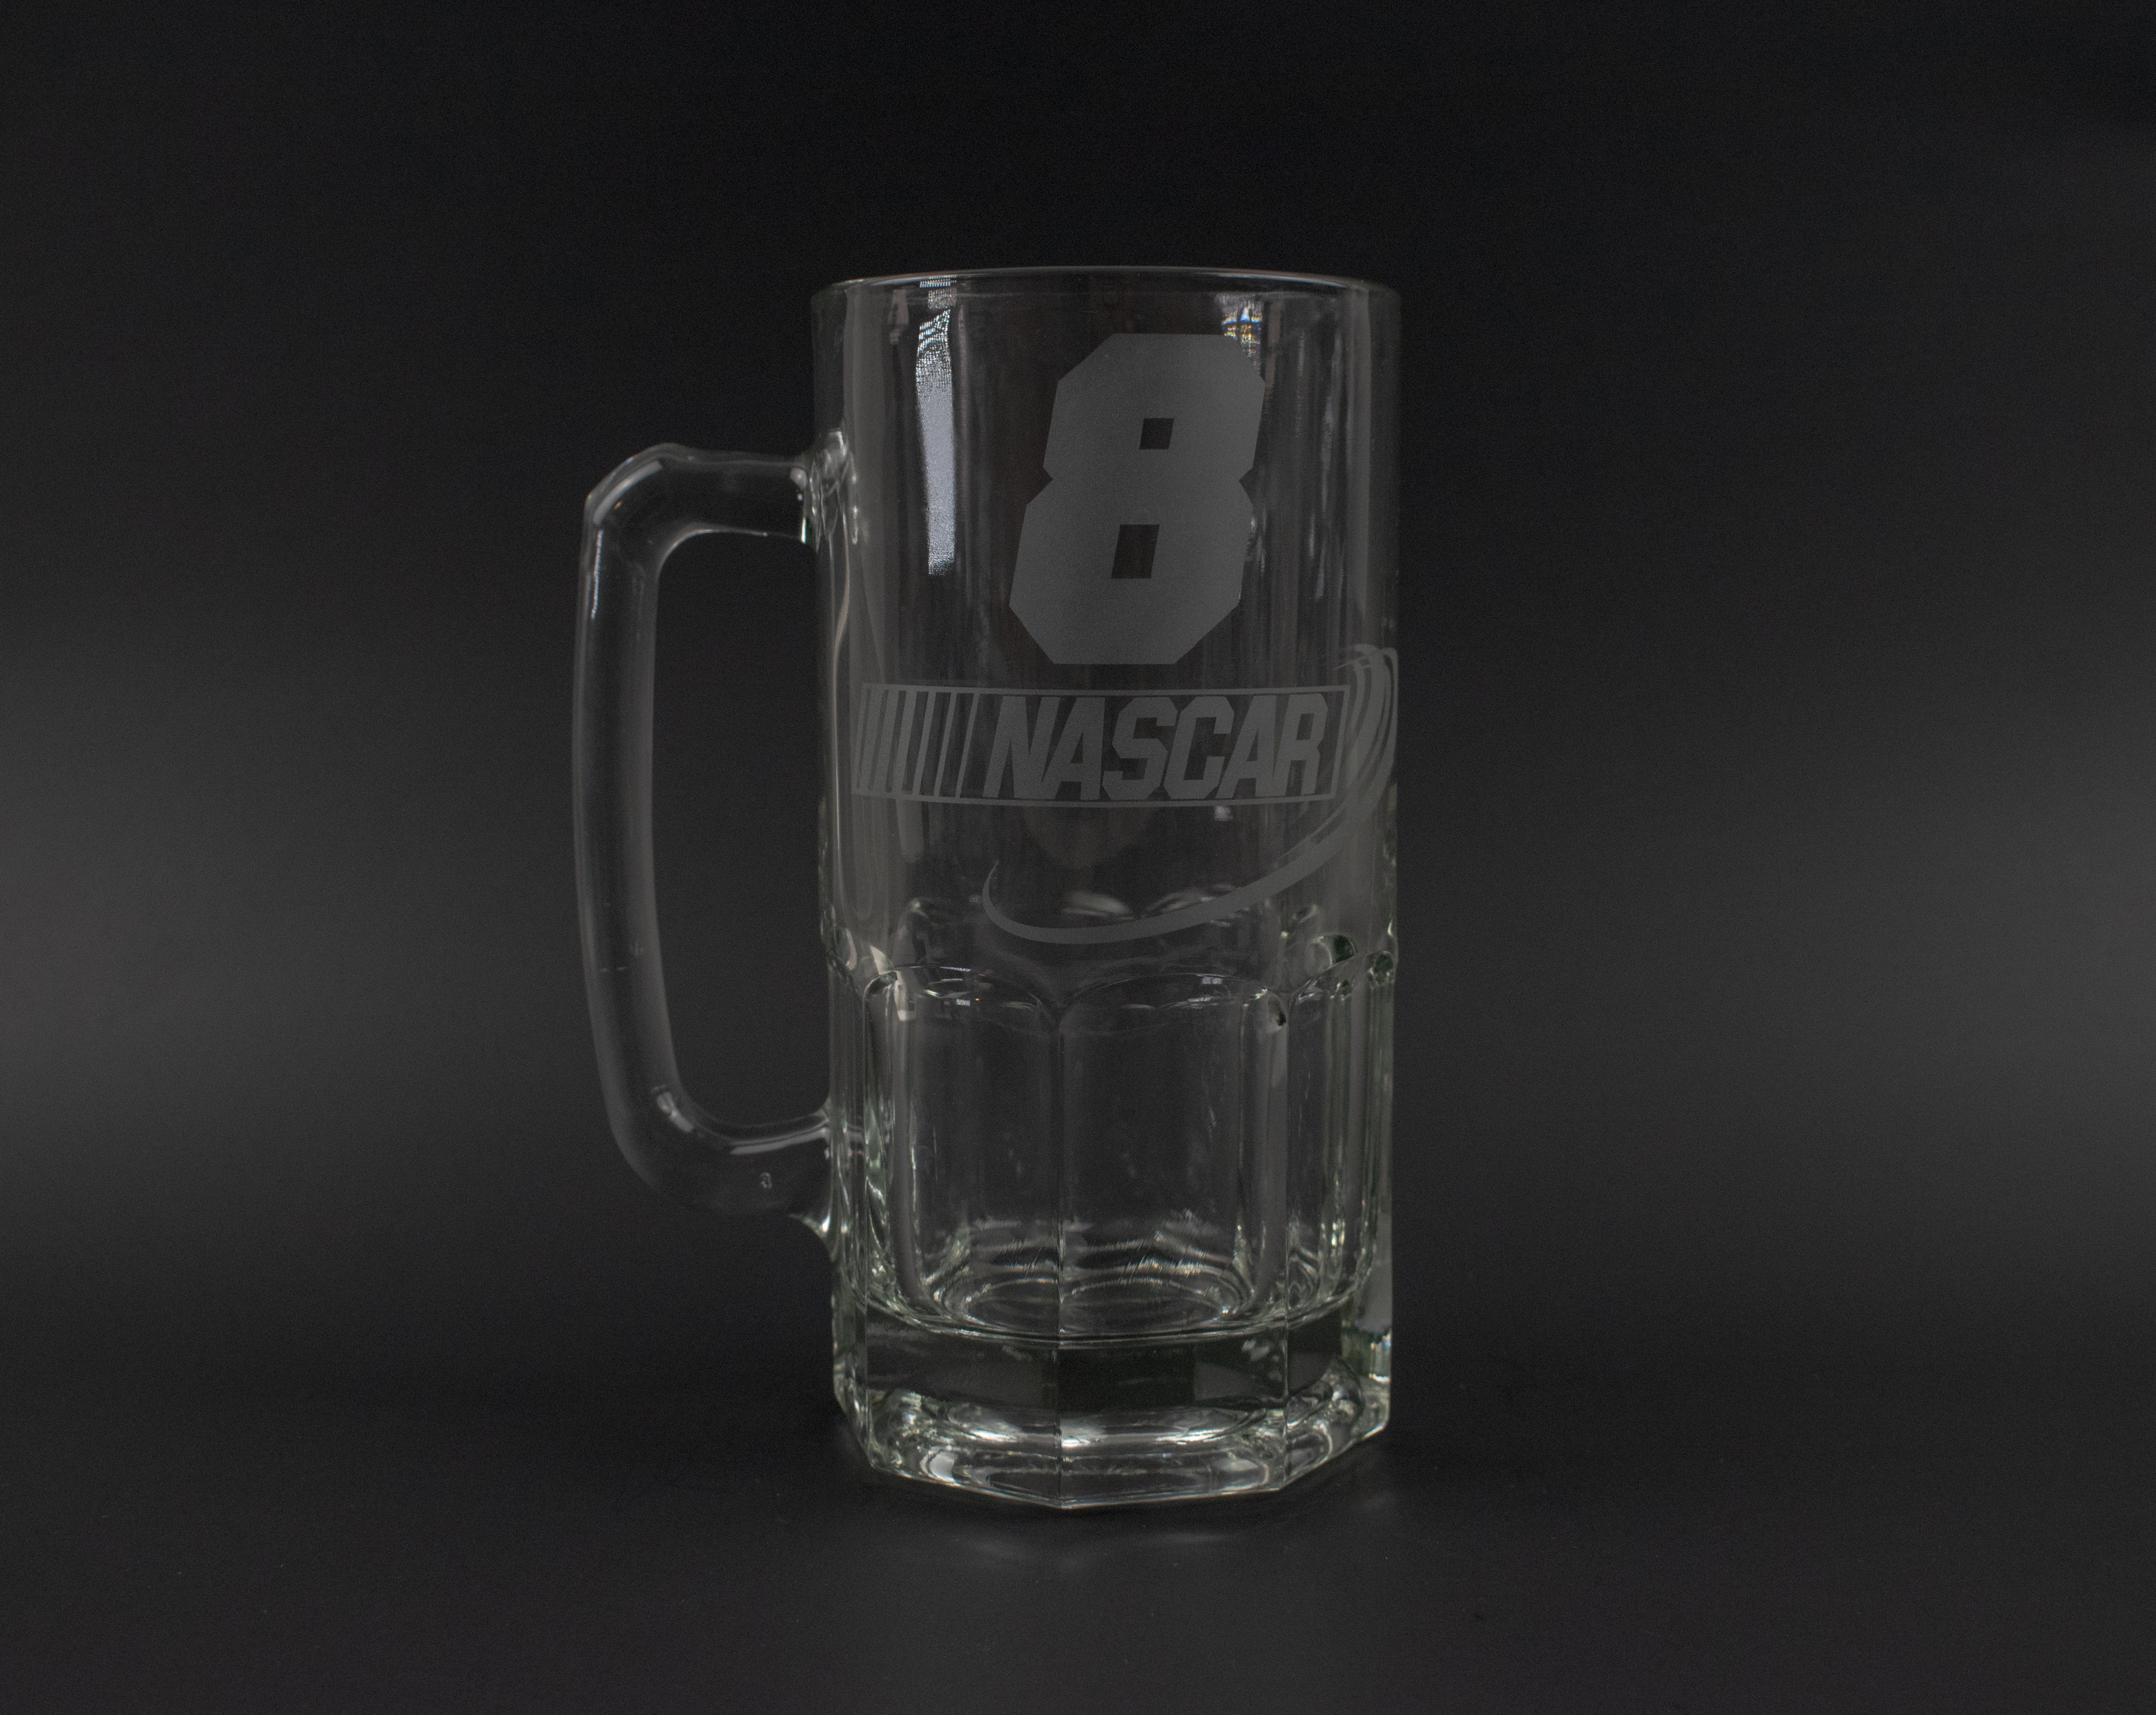 Earnhardt Jr 8 Beer Mug Glass Collectible Beer Mug Dale Earnhardt Jr Collectible Nascar